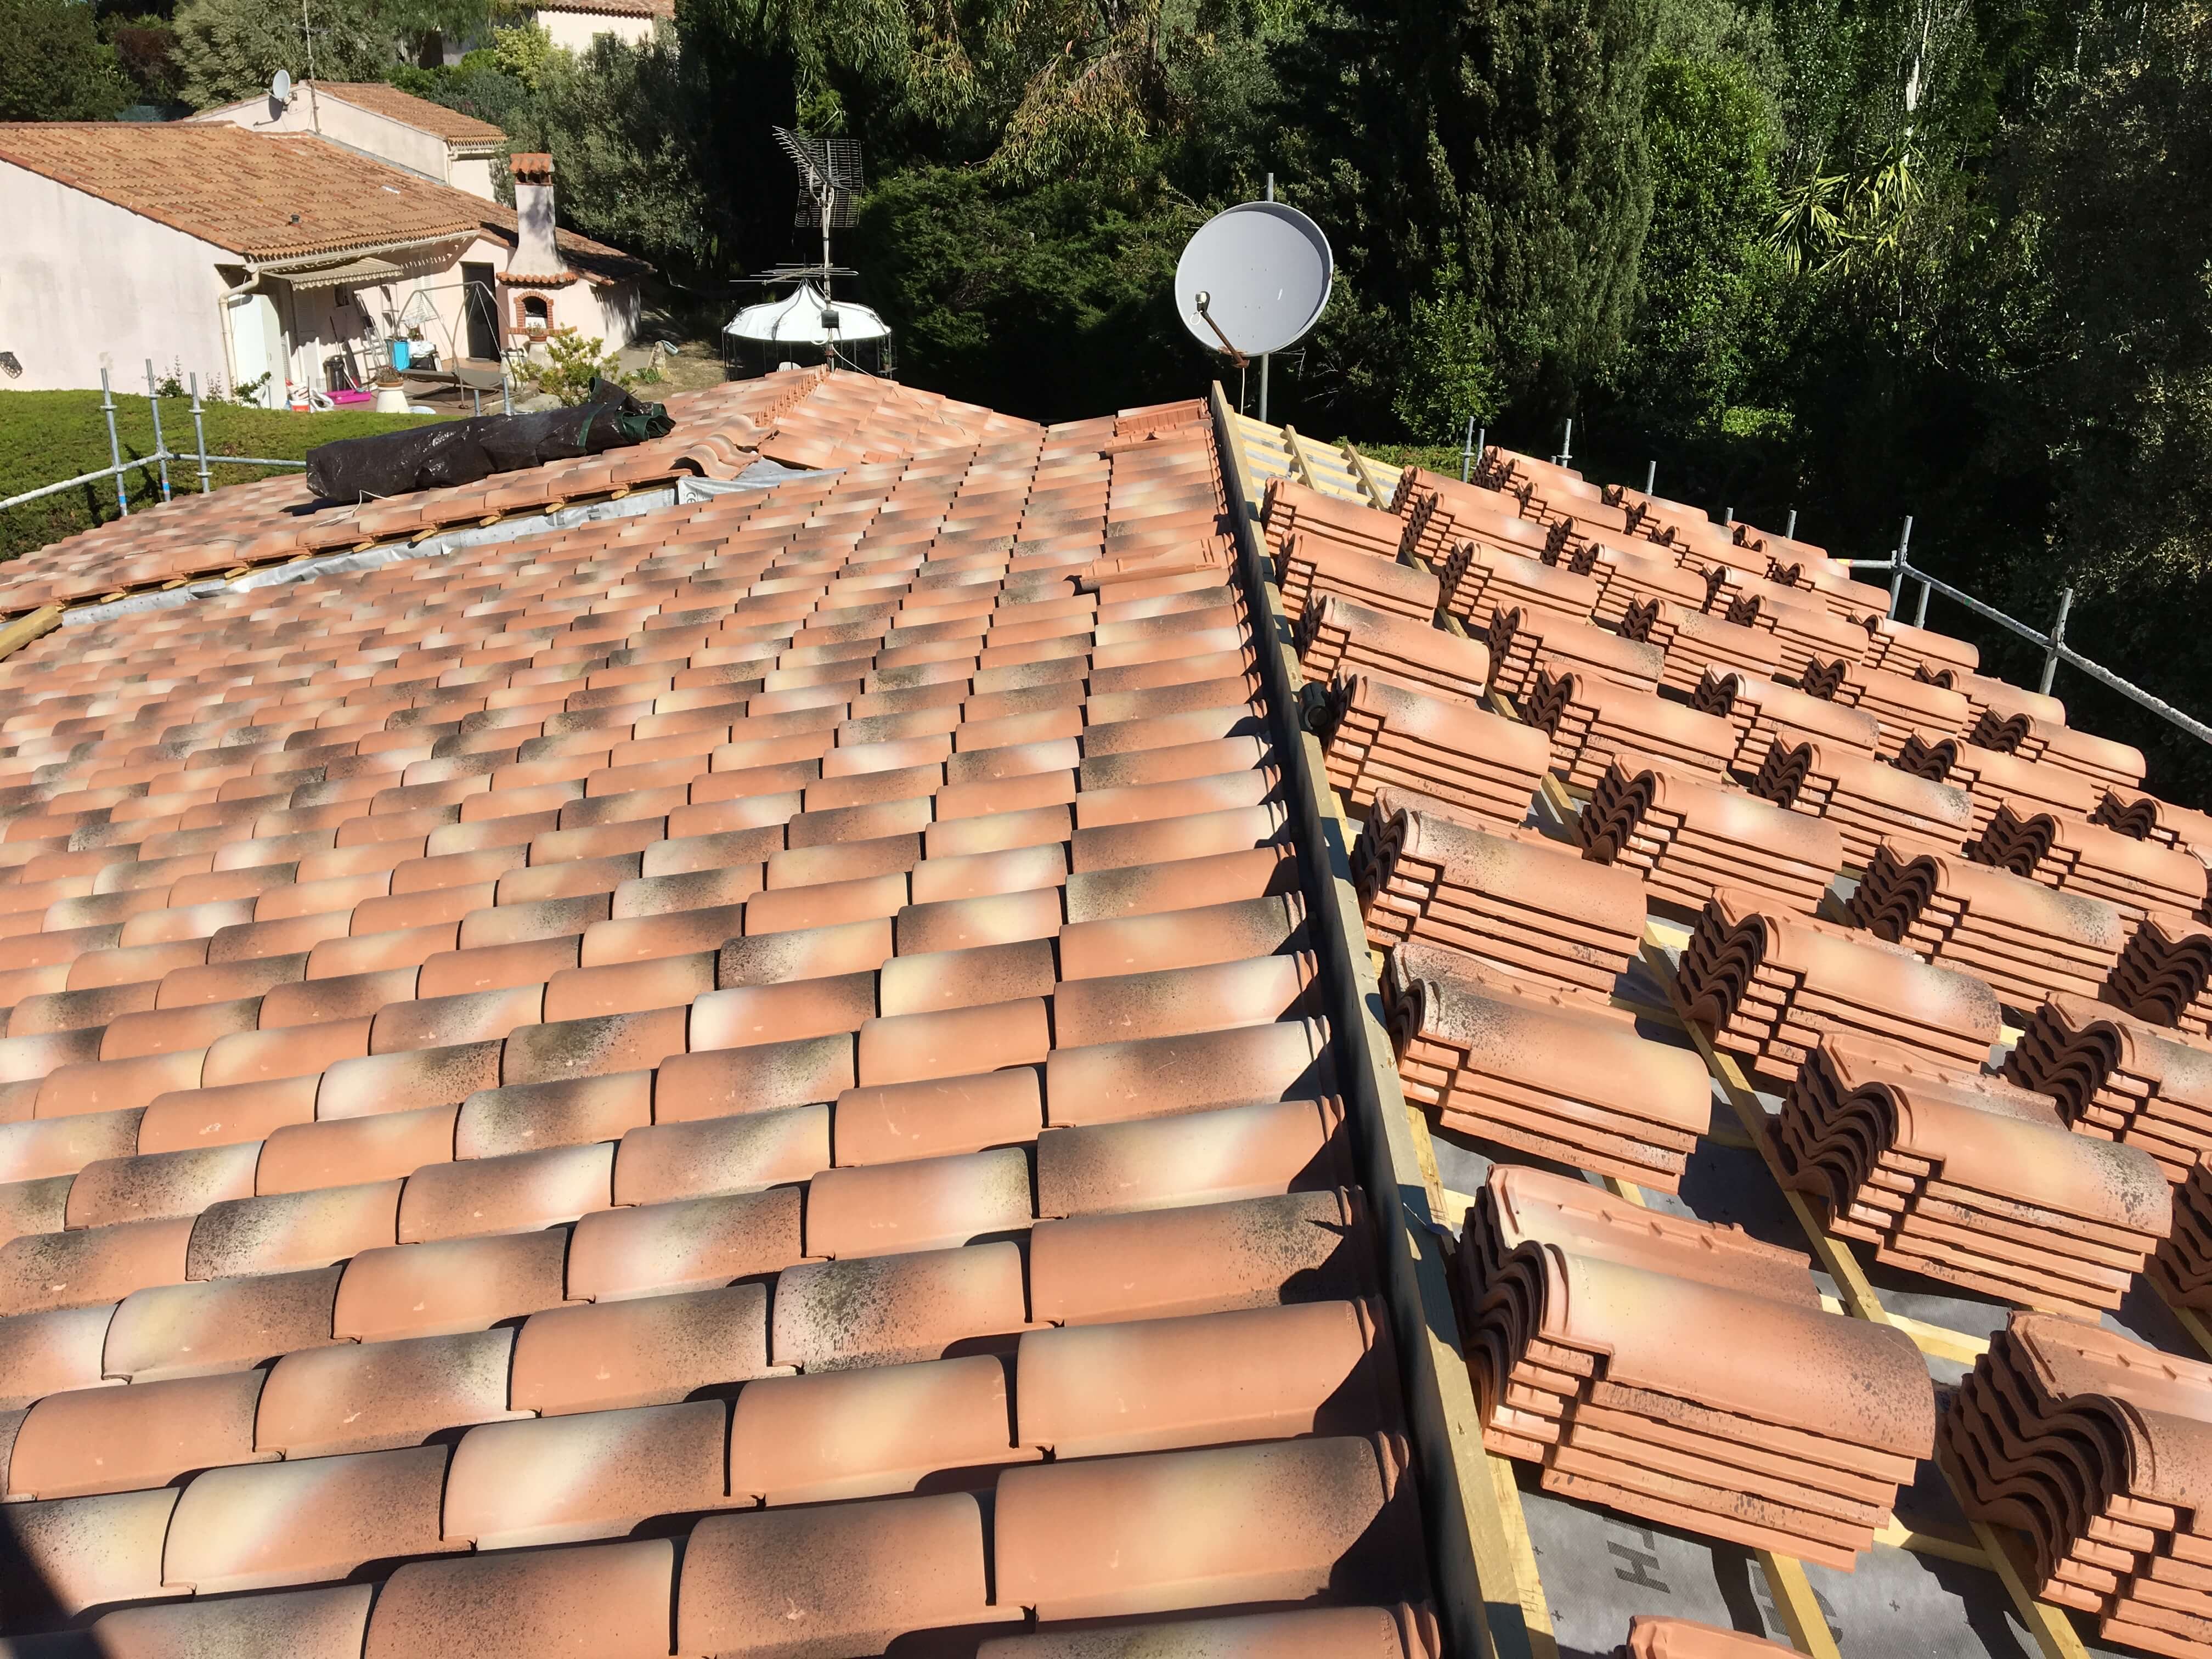 Rénovation et construction de votre toiture, couverture et zinguerie par Stanegri Toiture, artisan agréé à Toulon